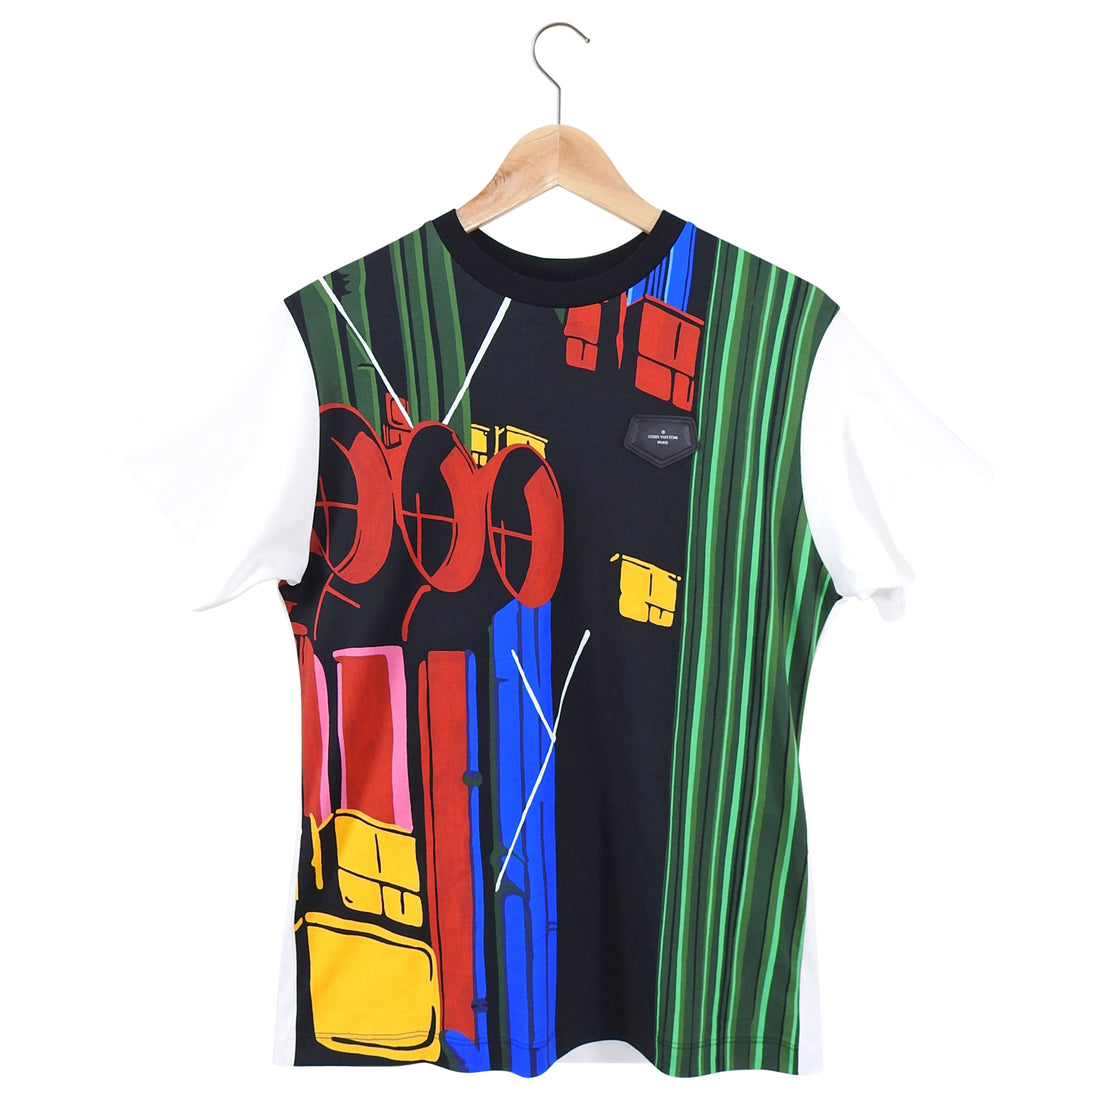 Louis Vuitton Multi Color Graphic Design T Shirt - M – I MISS YOU VINTAGE